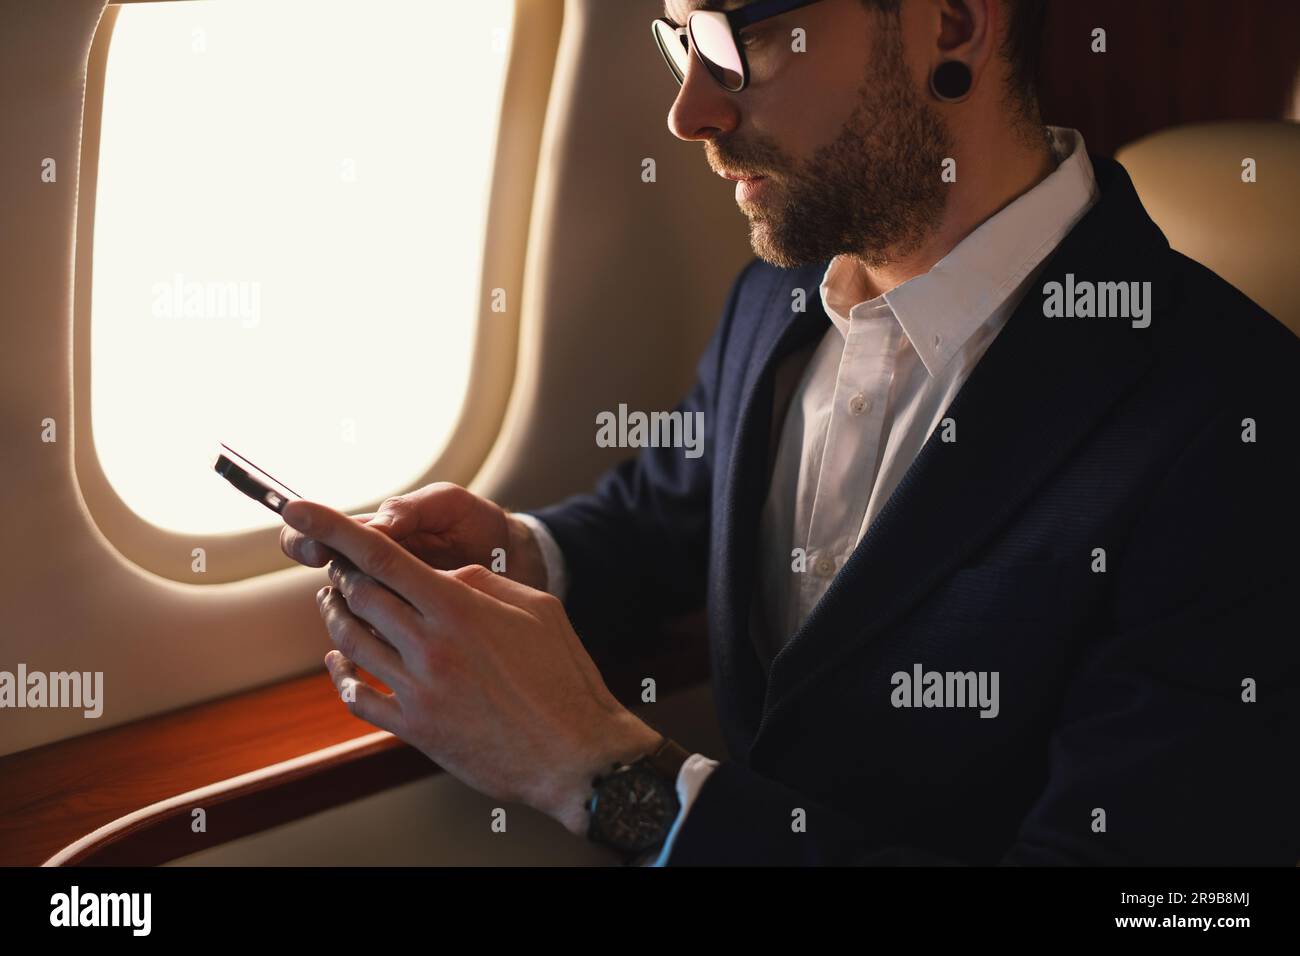 Eleganter CEO junger, selbstbewusster Geschäftsmann mit Brille Mann sitzt in einem erstklassigen Privatjet und arbeitet mit einem modernen Smartphone aus nächster Nähe Stockfoto